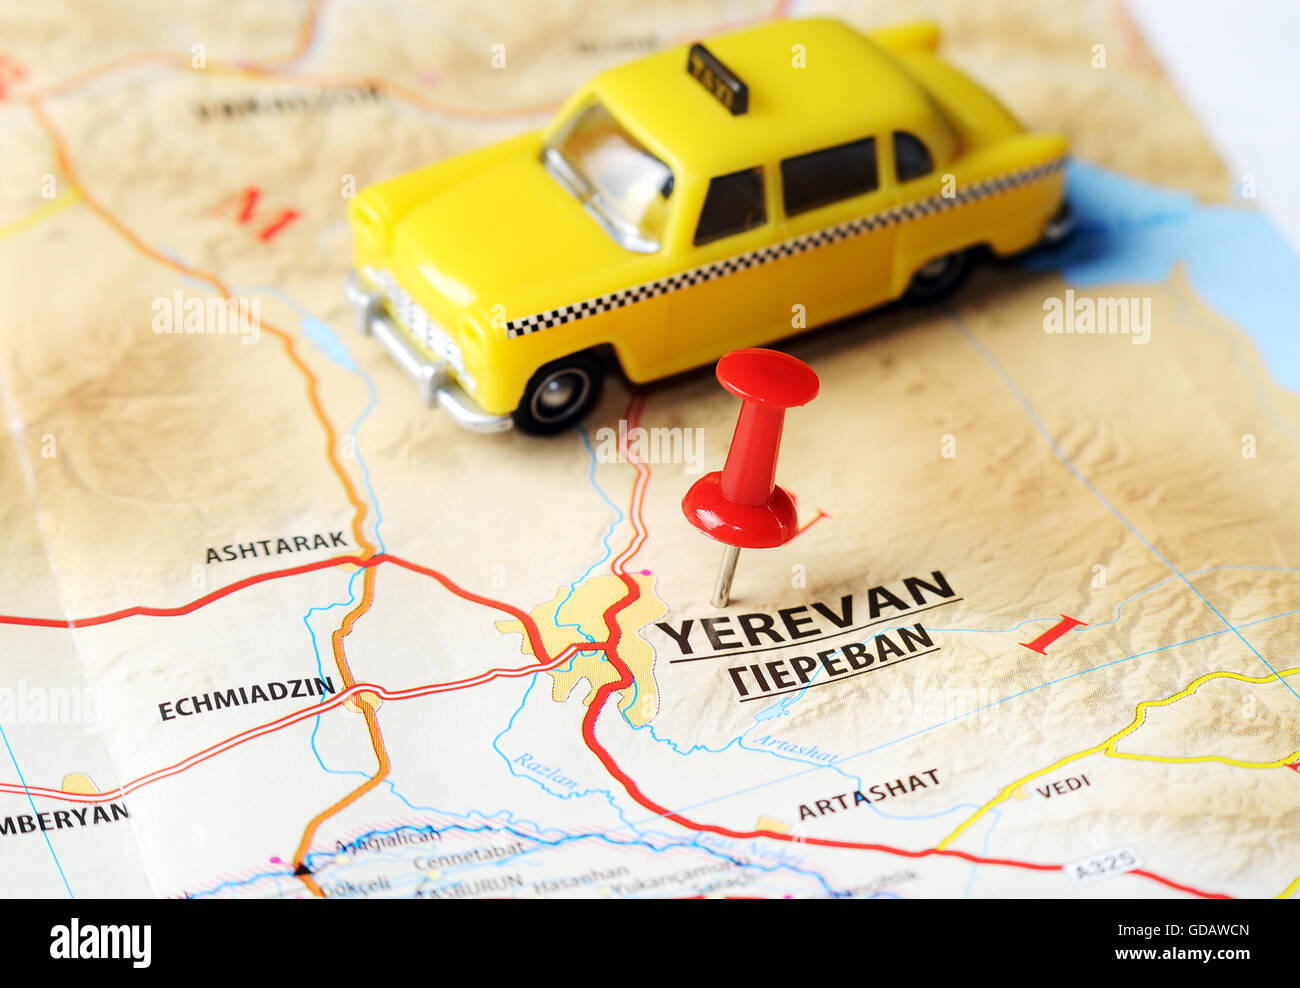 Chiudere fino a Yerevan ,l'Armenia mappa con perno rosso e un taxi - Concetto di viaggio Foto Stock